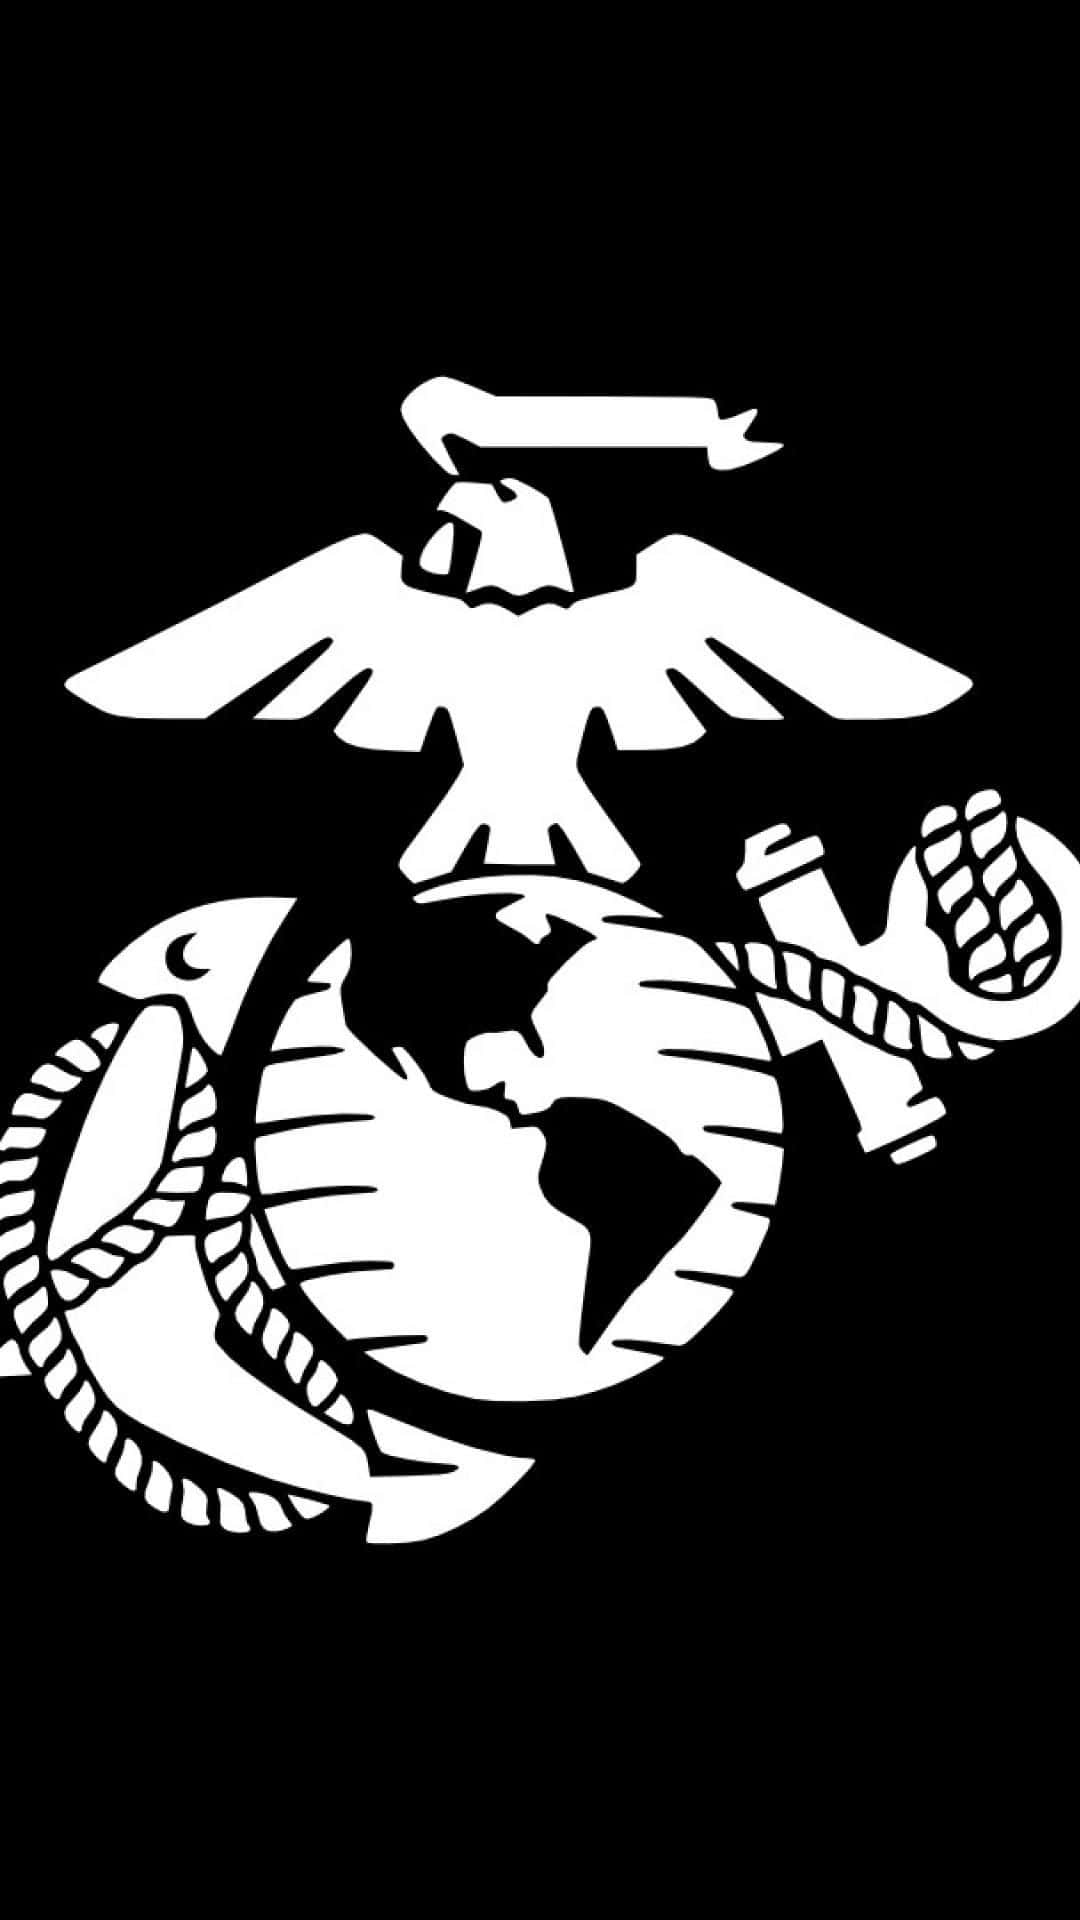 Usmarine Corps Emblem Klistermærke. Wallpaper